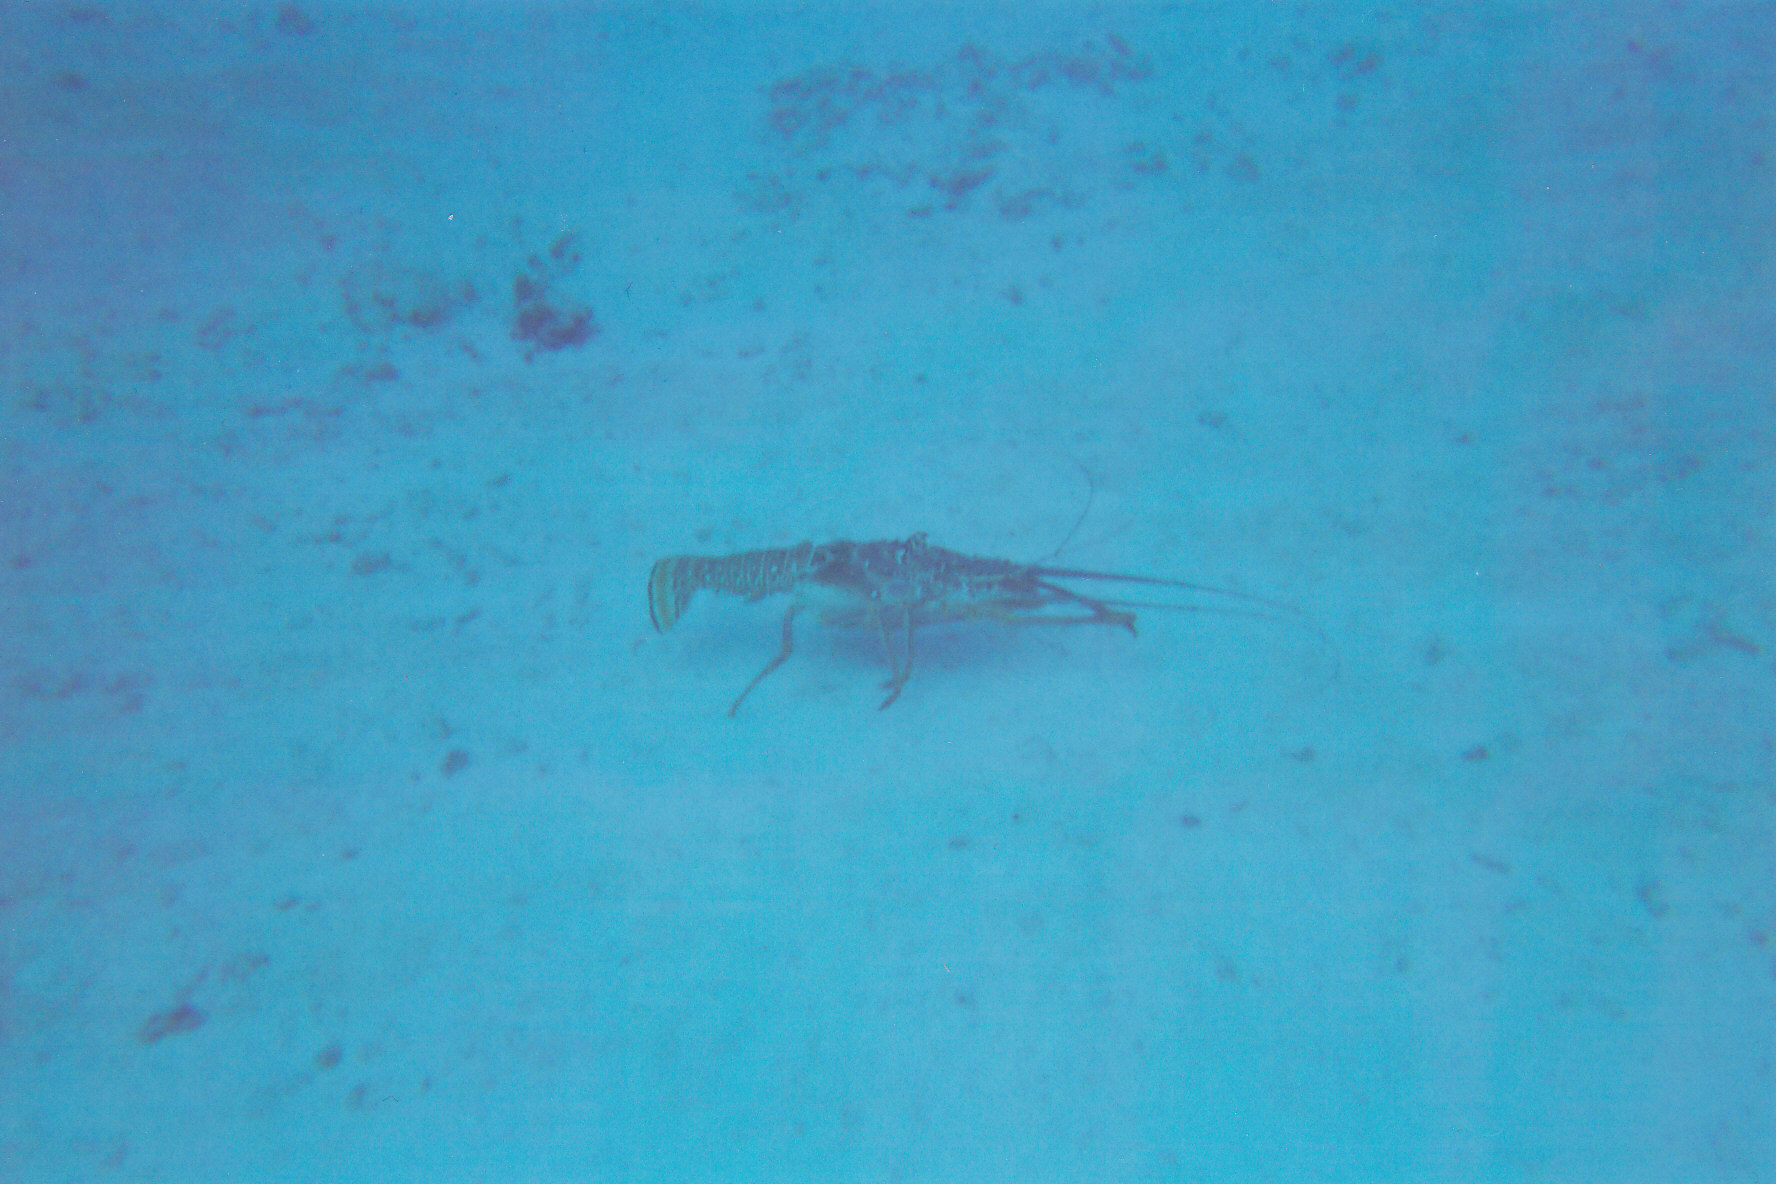 A lobster sitting in 45 feet